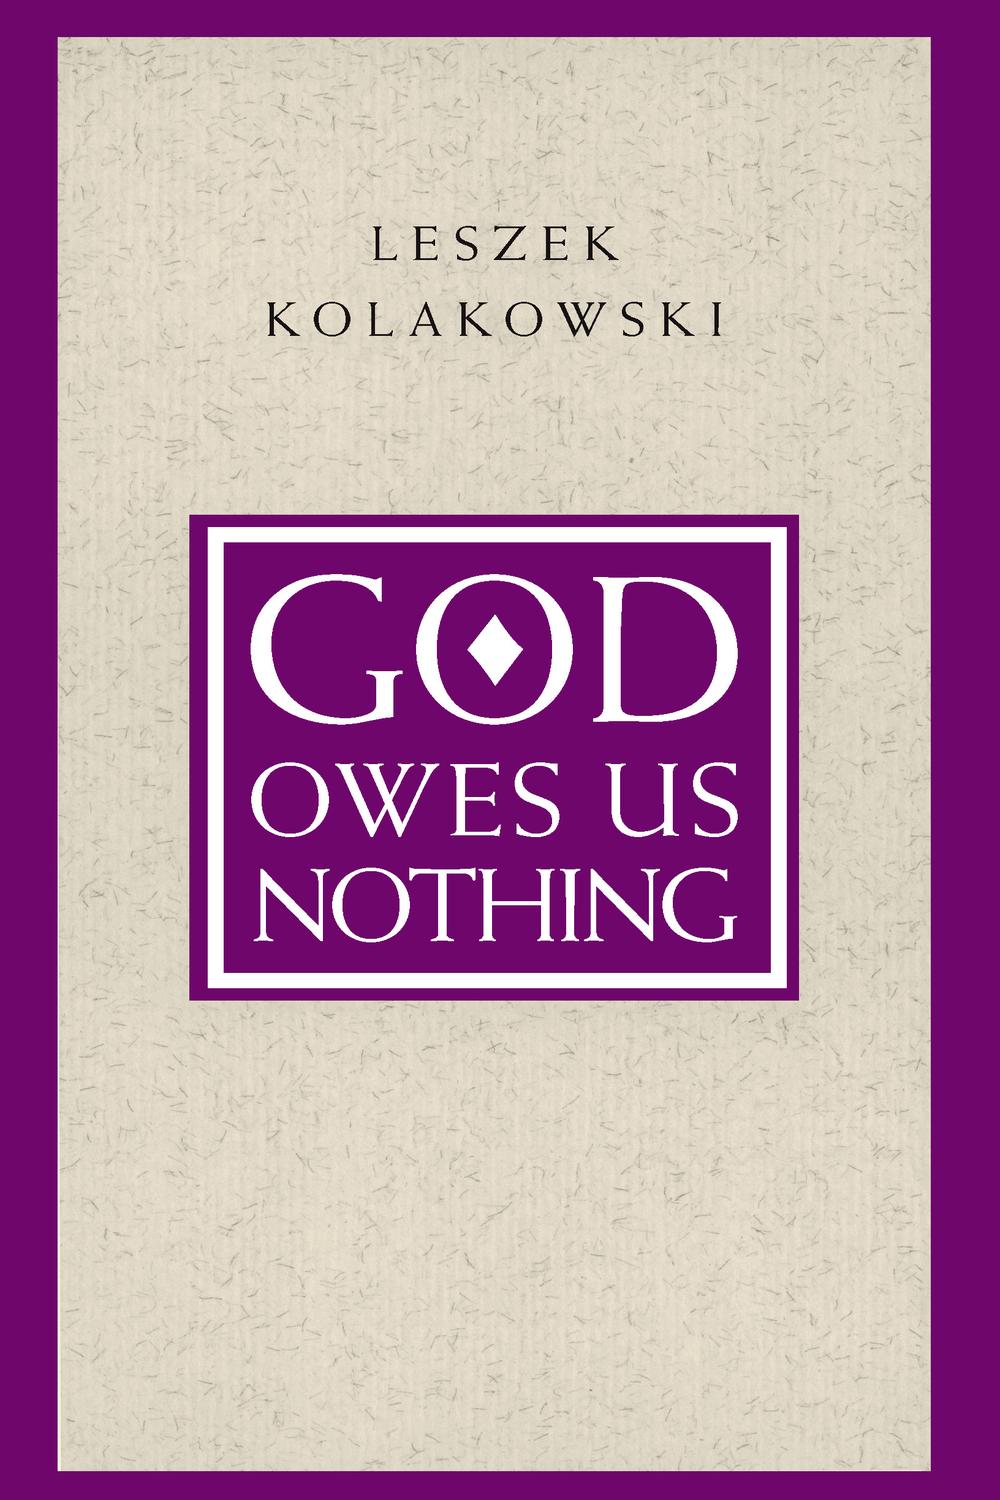 God Owes Us Nothing - Leszek Kolakowski